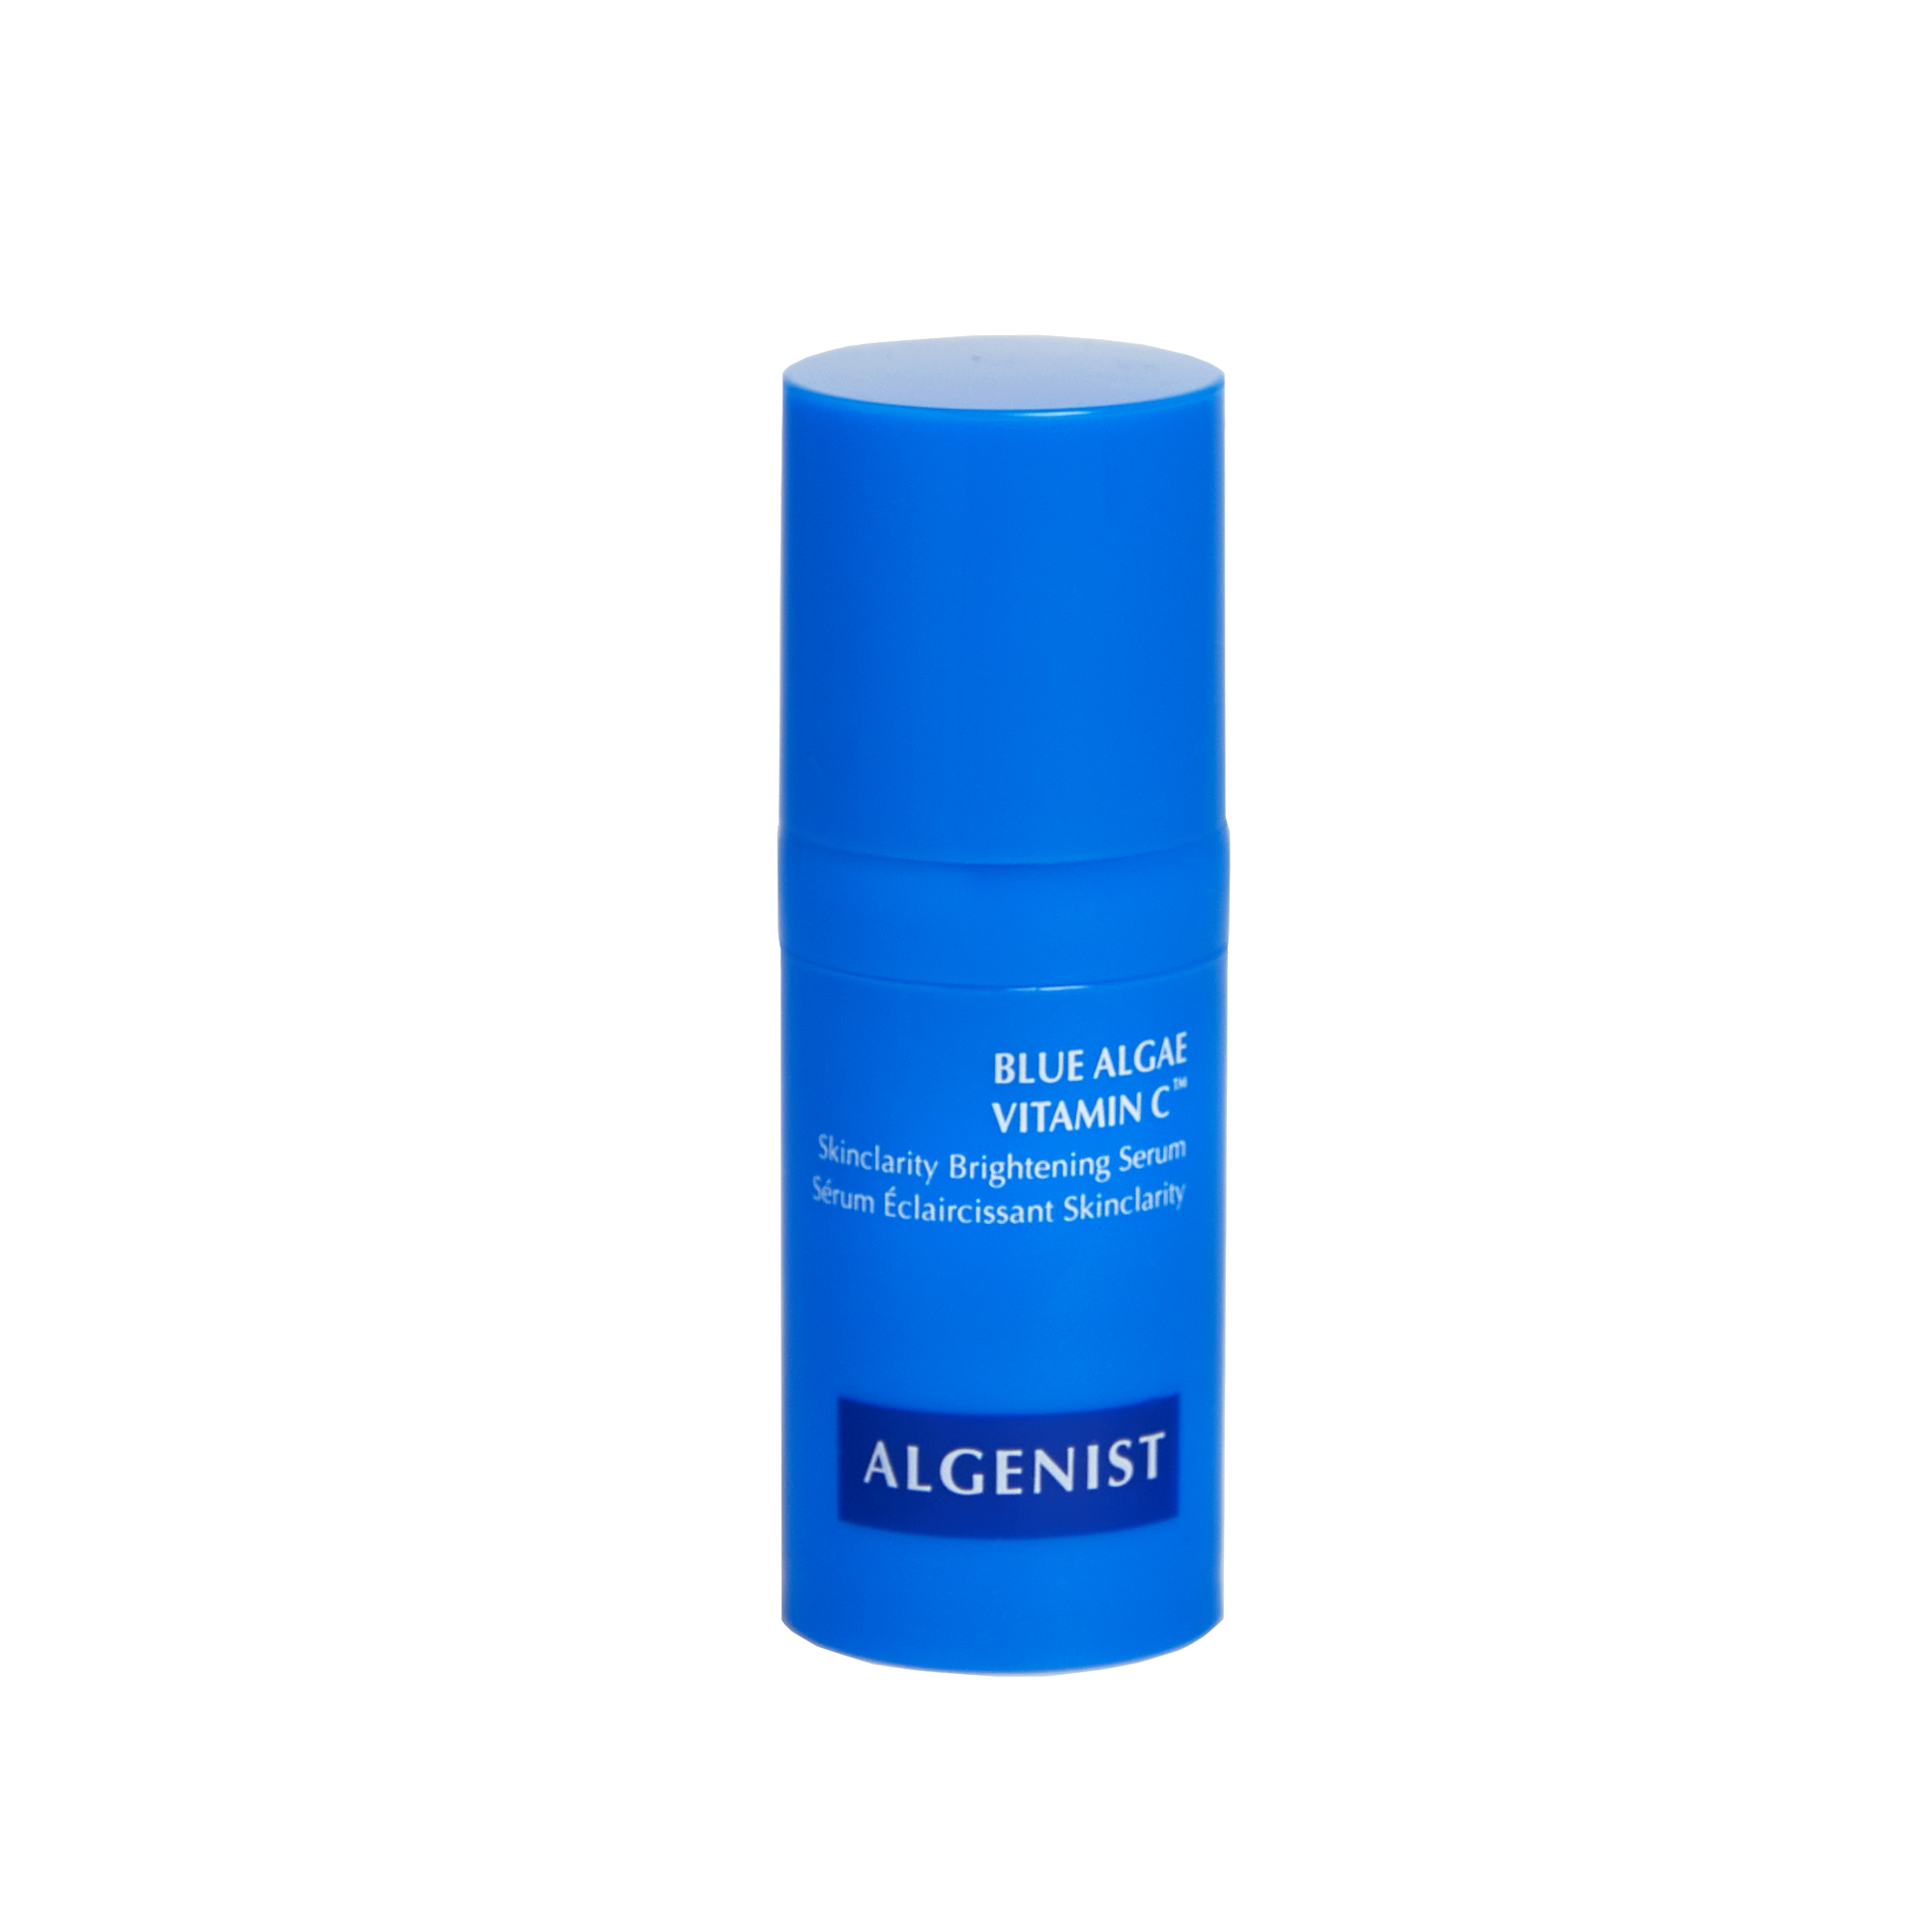 Algenist - Blue Algae Vitamin C™ Skinclarity Brightening Serum 8Ml Vegan